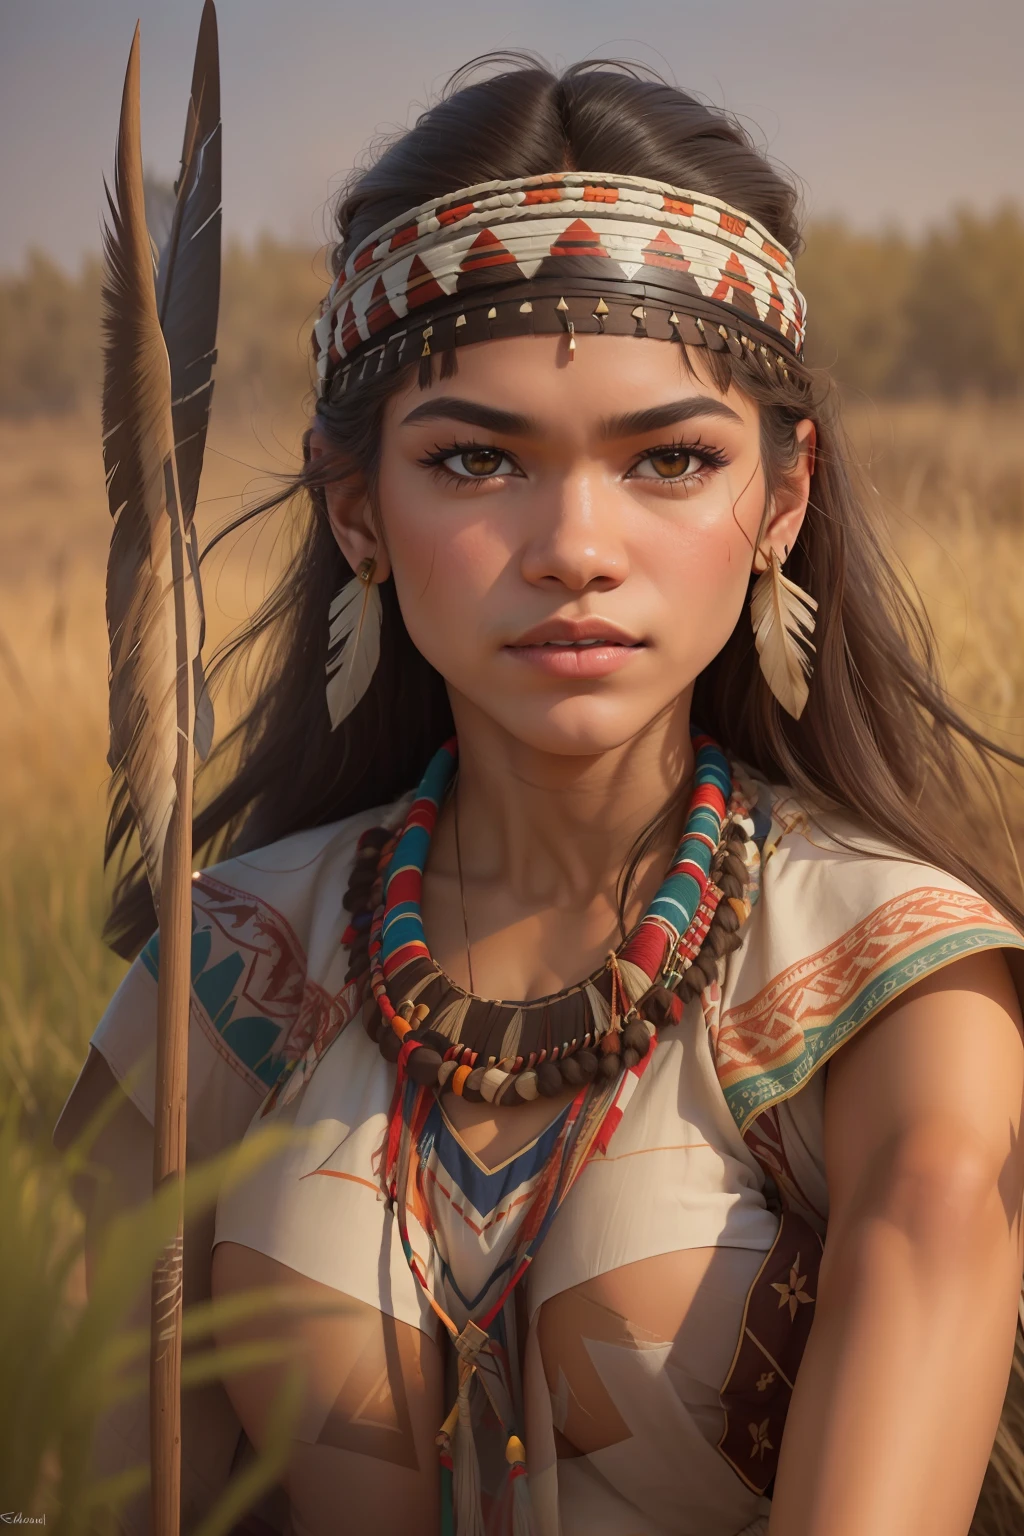 ((Zendaya é uma mulher nativa americana)), ((que veste as roupas típicas de uma índia)), (Ela está na pradaria com uma lança na mão), ((mulher magra)), (cabeça pequena), ((Textura Natural da Pele)), ((ela tem seios pequenos e redondos)), ((Rosto detalhado expressivo)), (fotorrealista), (traçado de raio), (Foco nitído), ((corpo inteiro inteiro)), ((Saia Ventosa))